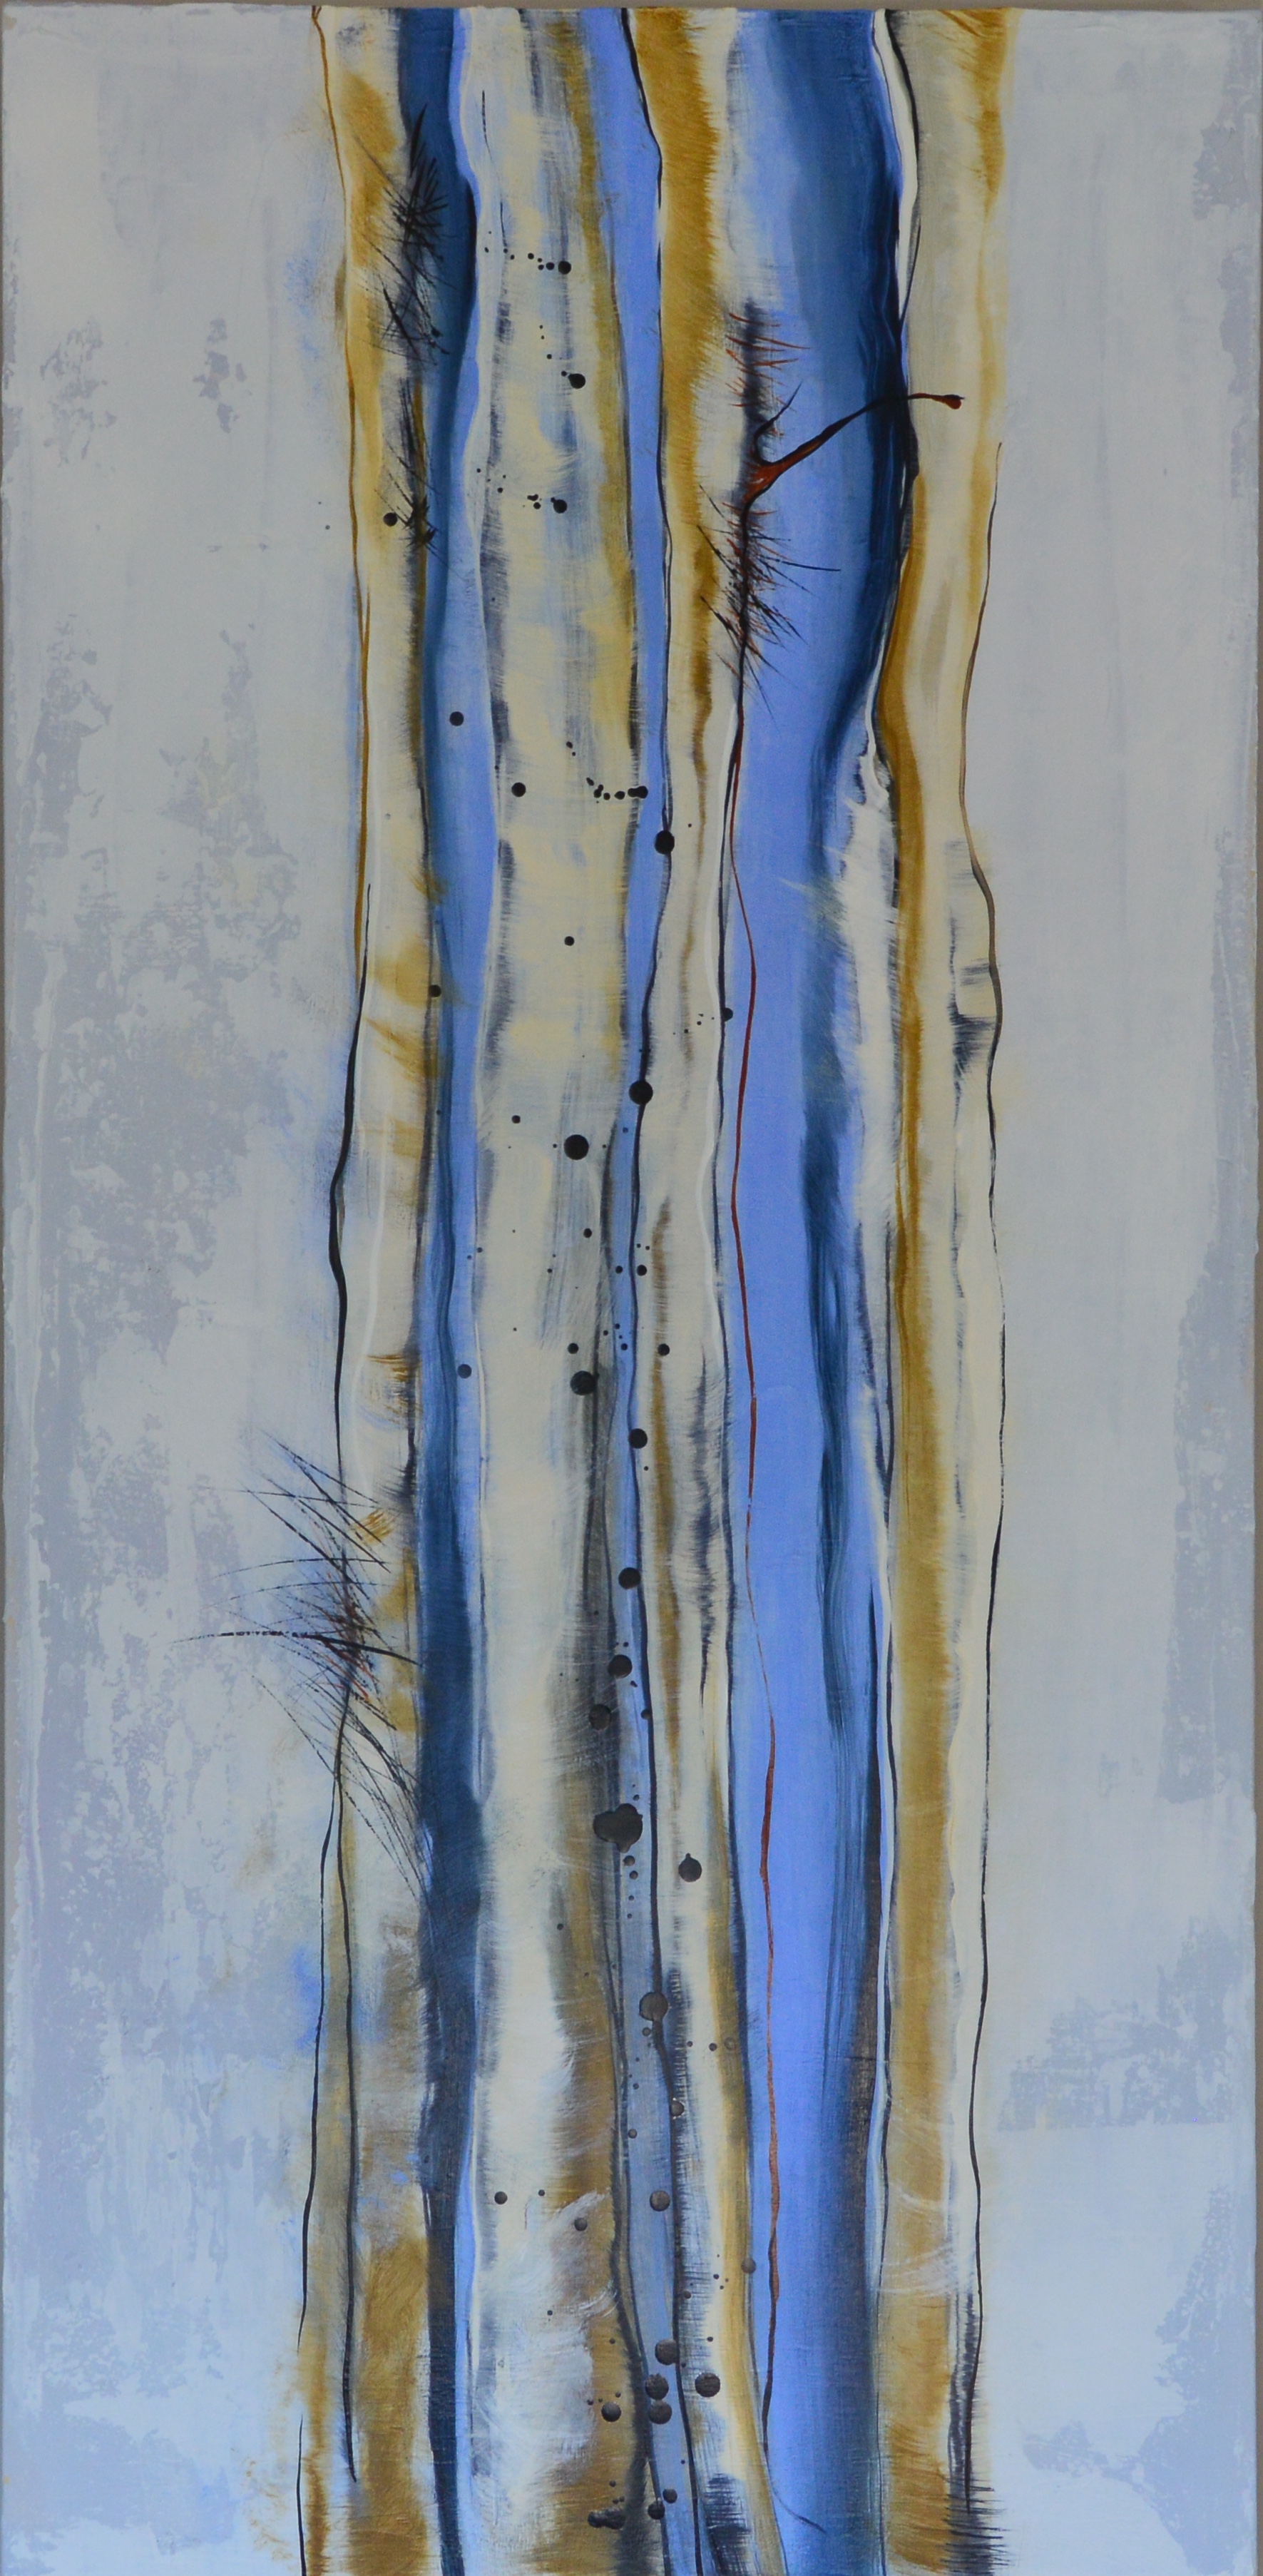   Coastal Trees II   22 x 45  Oil on Canvas 